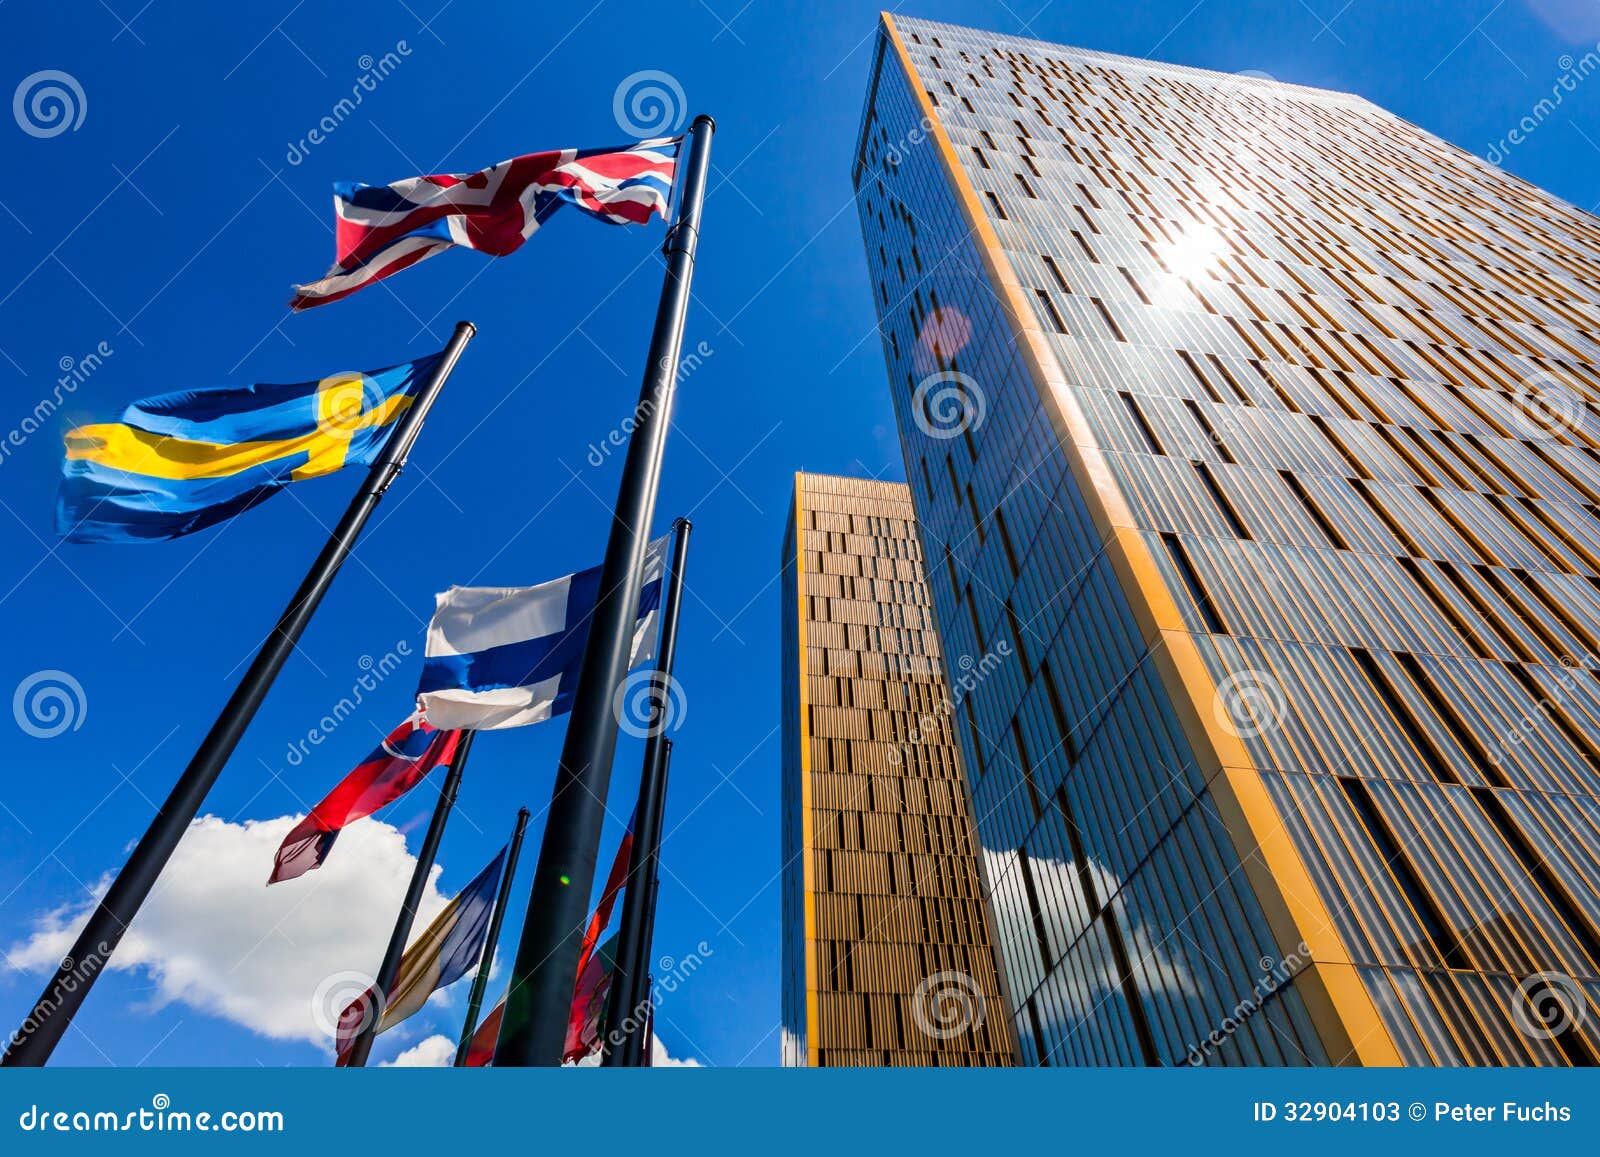 欧洲法院在卢森堡. 欧洲法院的两个塔和旗杆在反对蓝天的卢森堡与壮观的太阳飘动